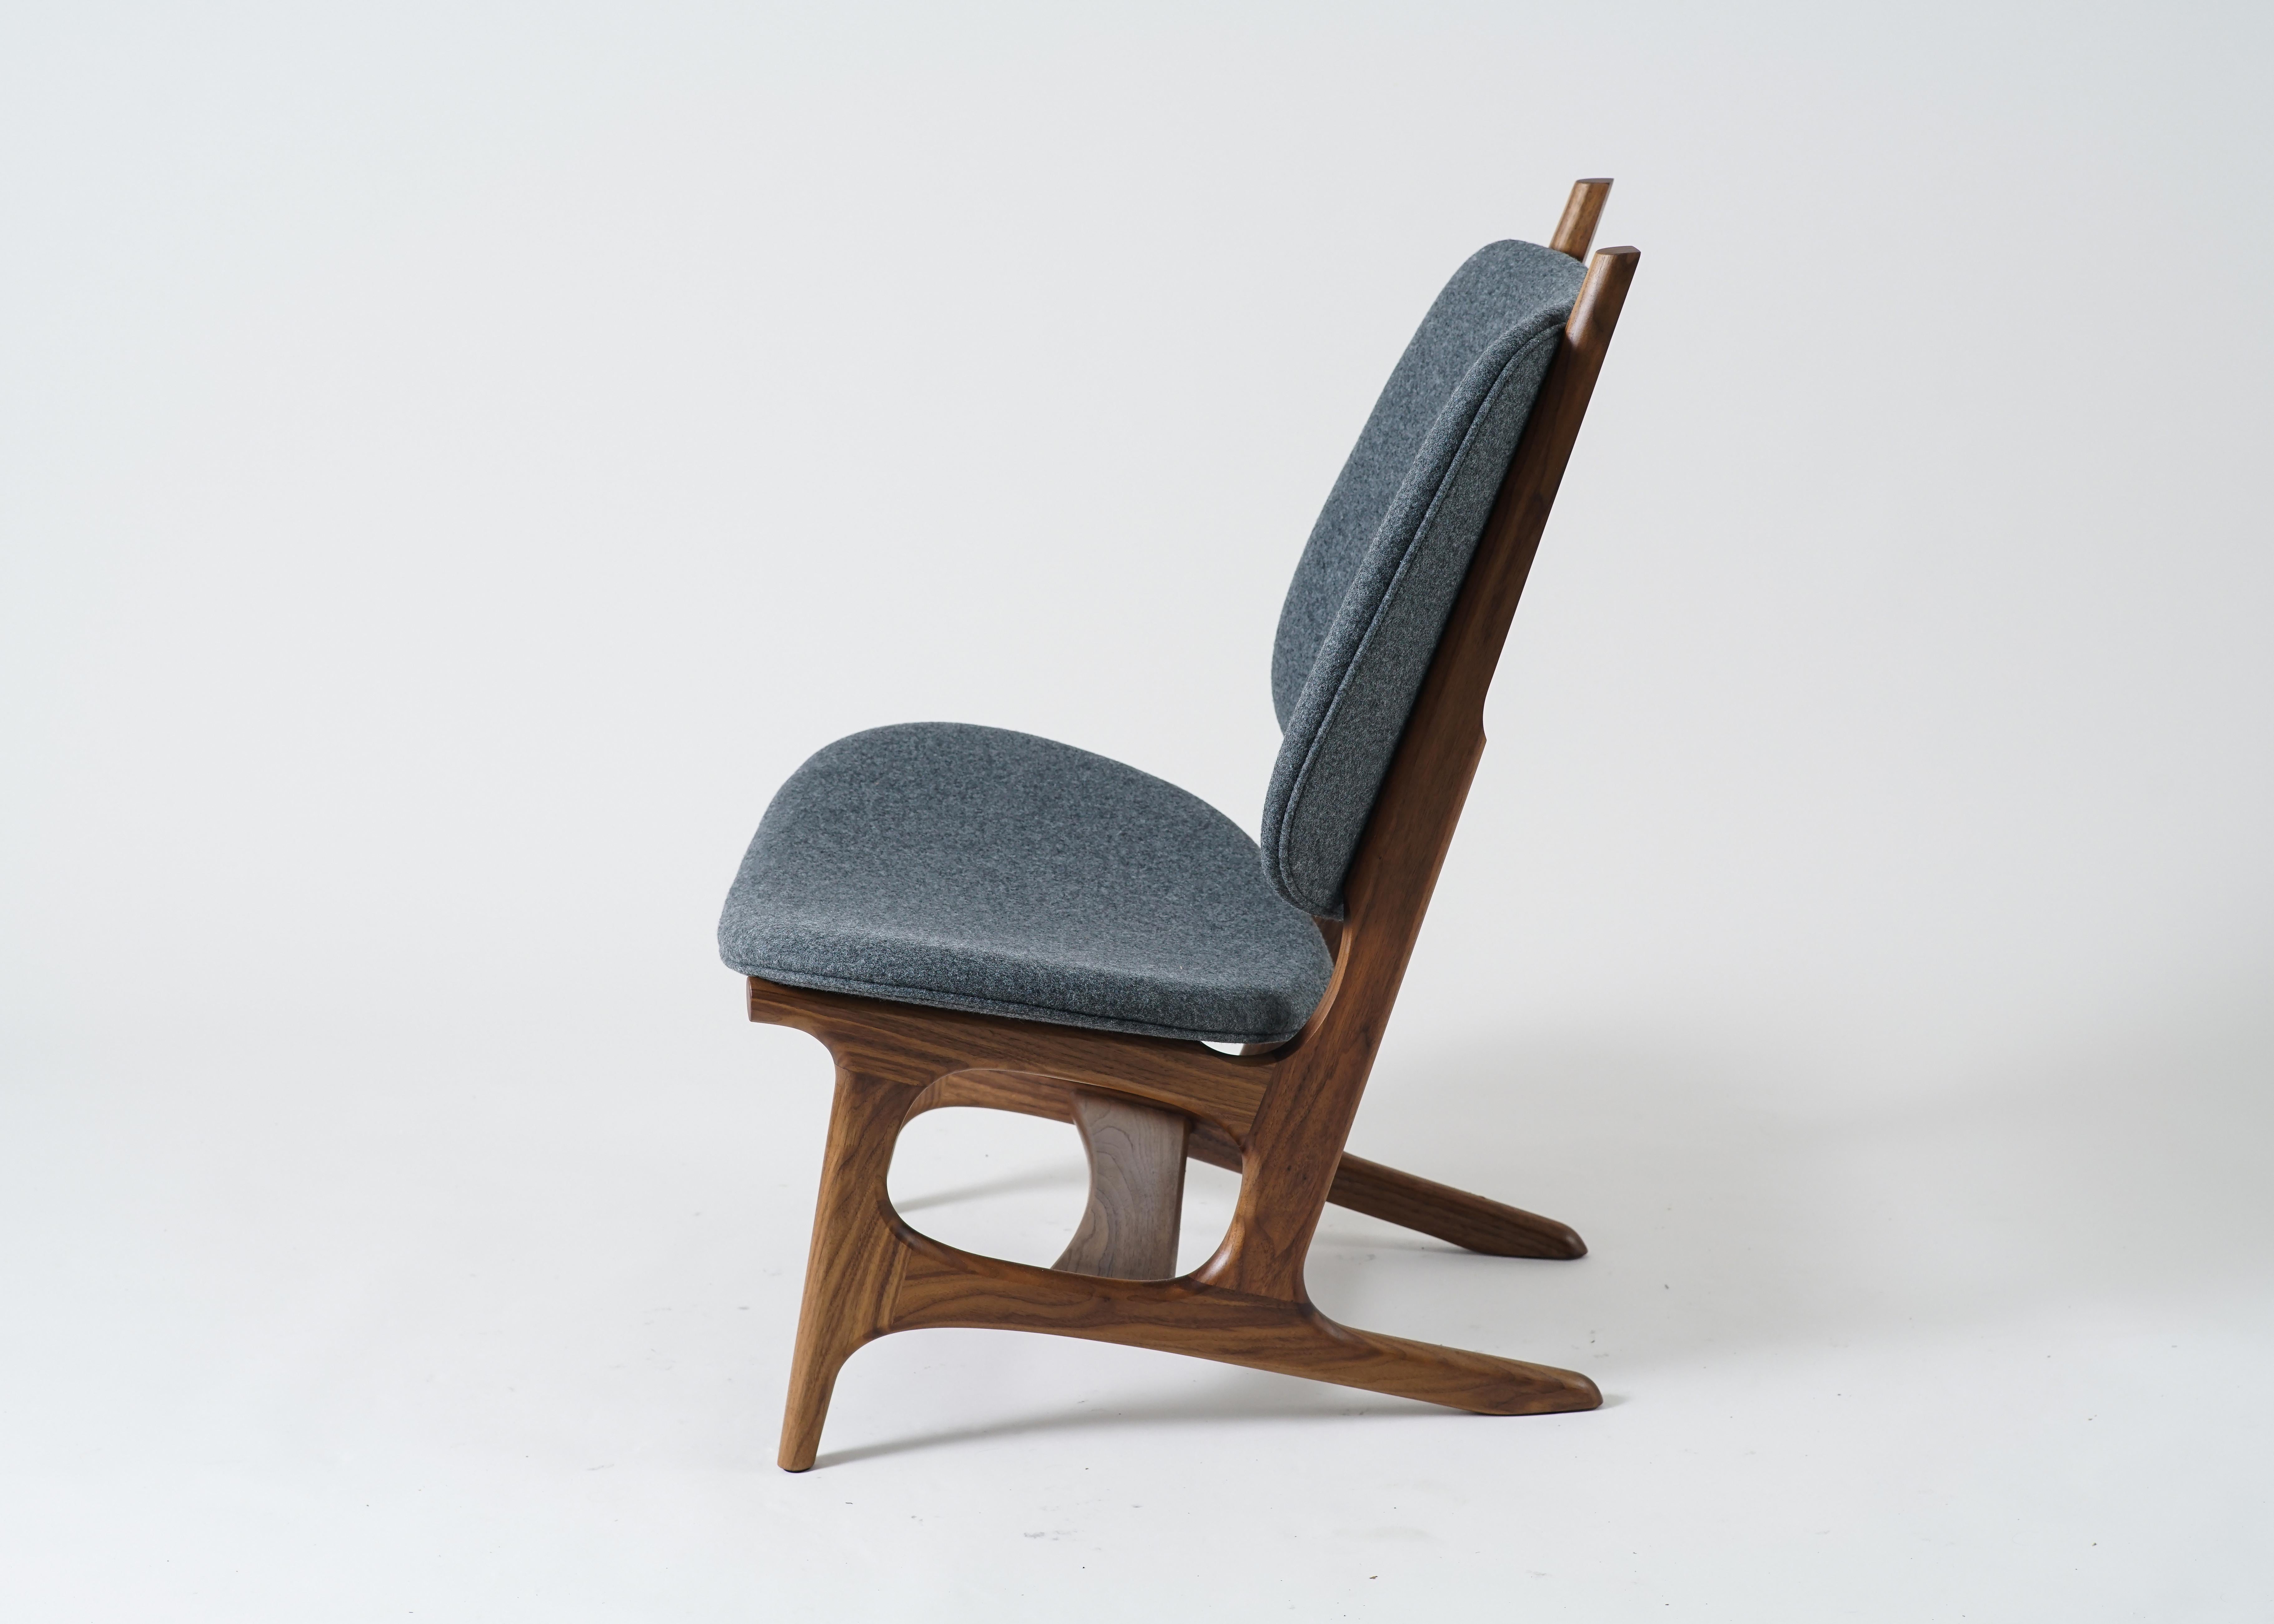 Der Francis Sessel von Phloem Studio ist ein moderner, übergroßer Sessel mit einem Gestell aus massivem Walnussholz und einer gepolsterten Sitzfläche und Rückenlehne mit Wollbezug. Francis ist ein geräumiger Sessel, in dem man Americanos oder Wein